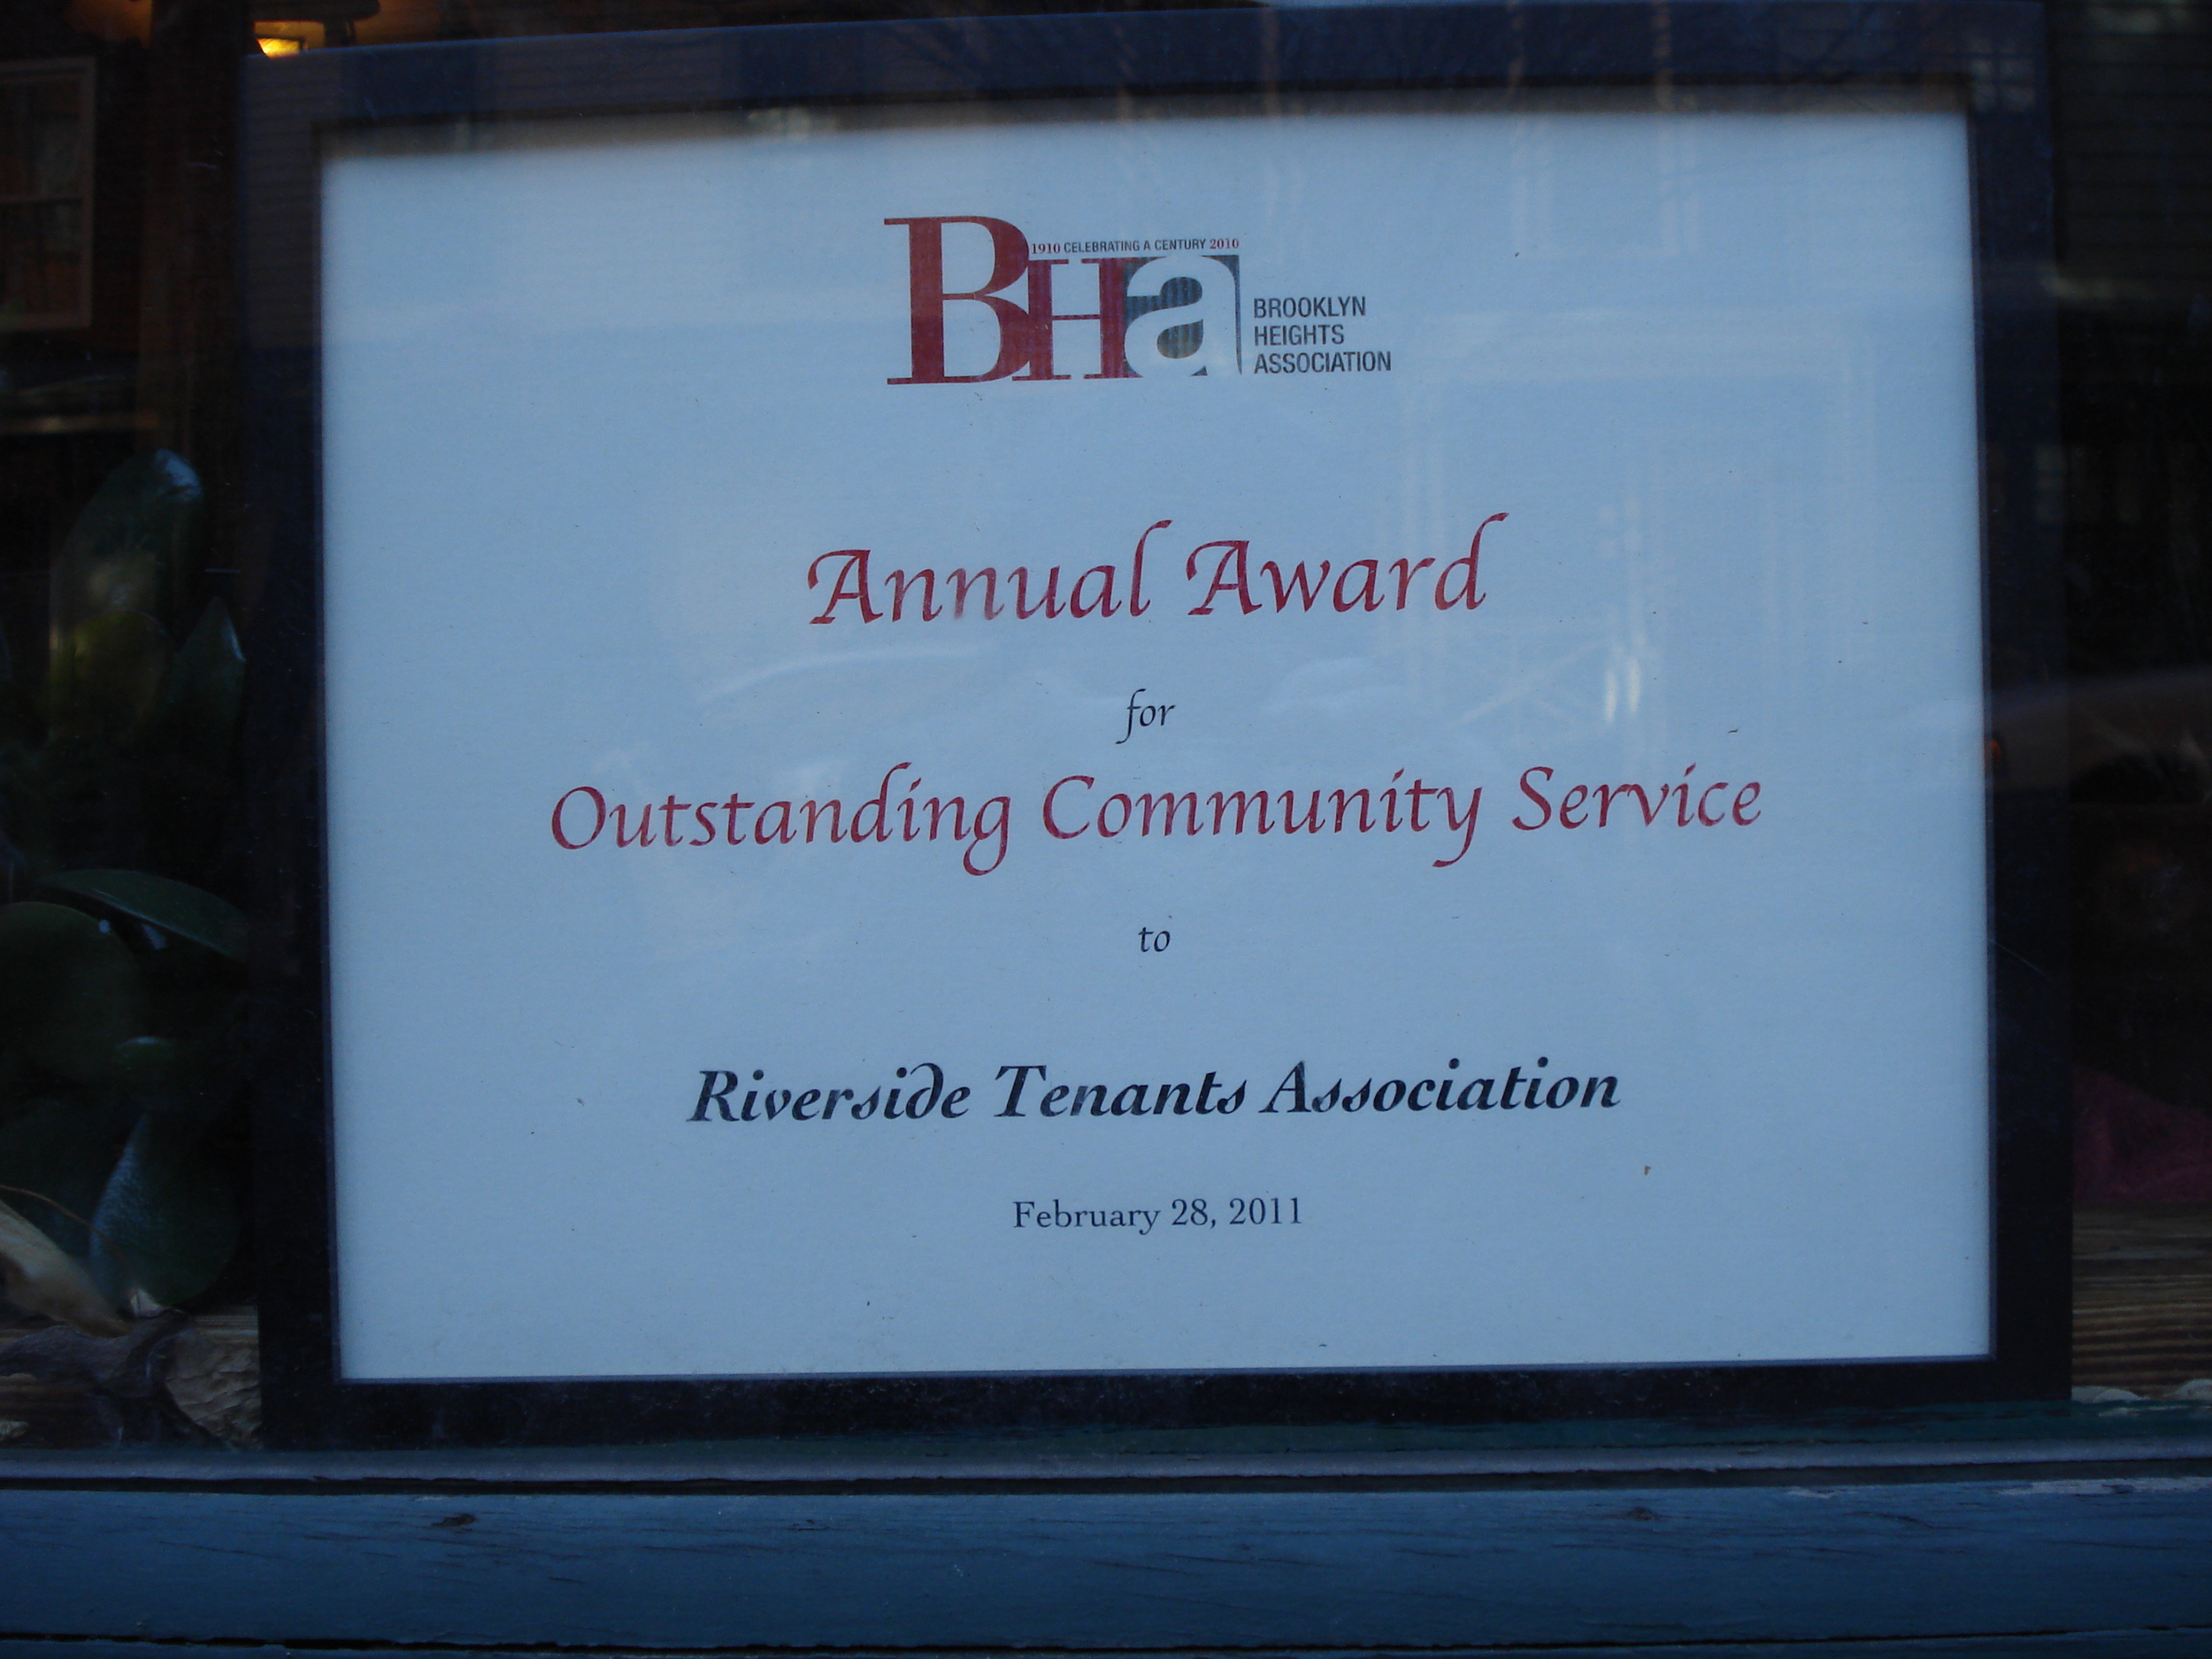 Brooklyn Heights Association Associate Award